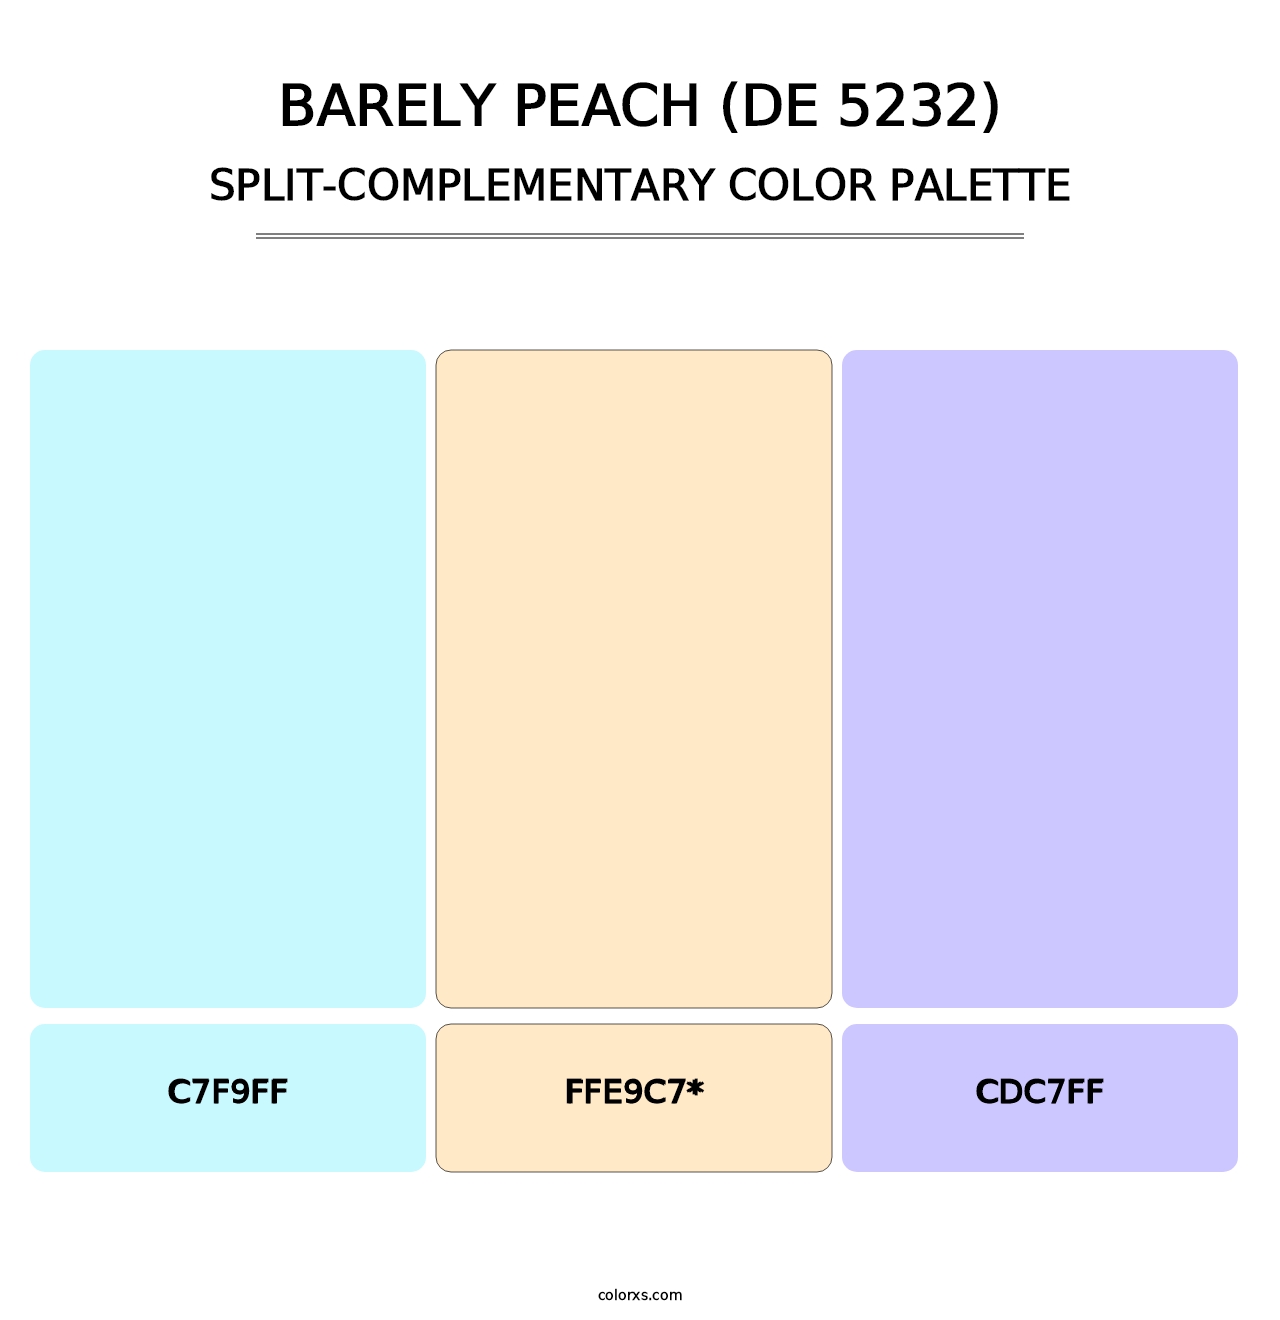 Barely Peach (DE 5232) - Split-Complementary Color Palette